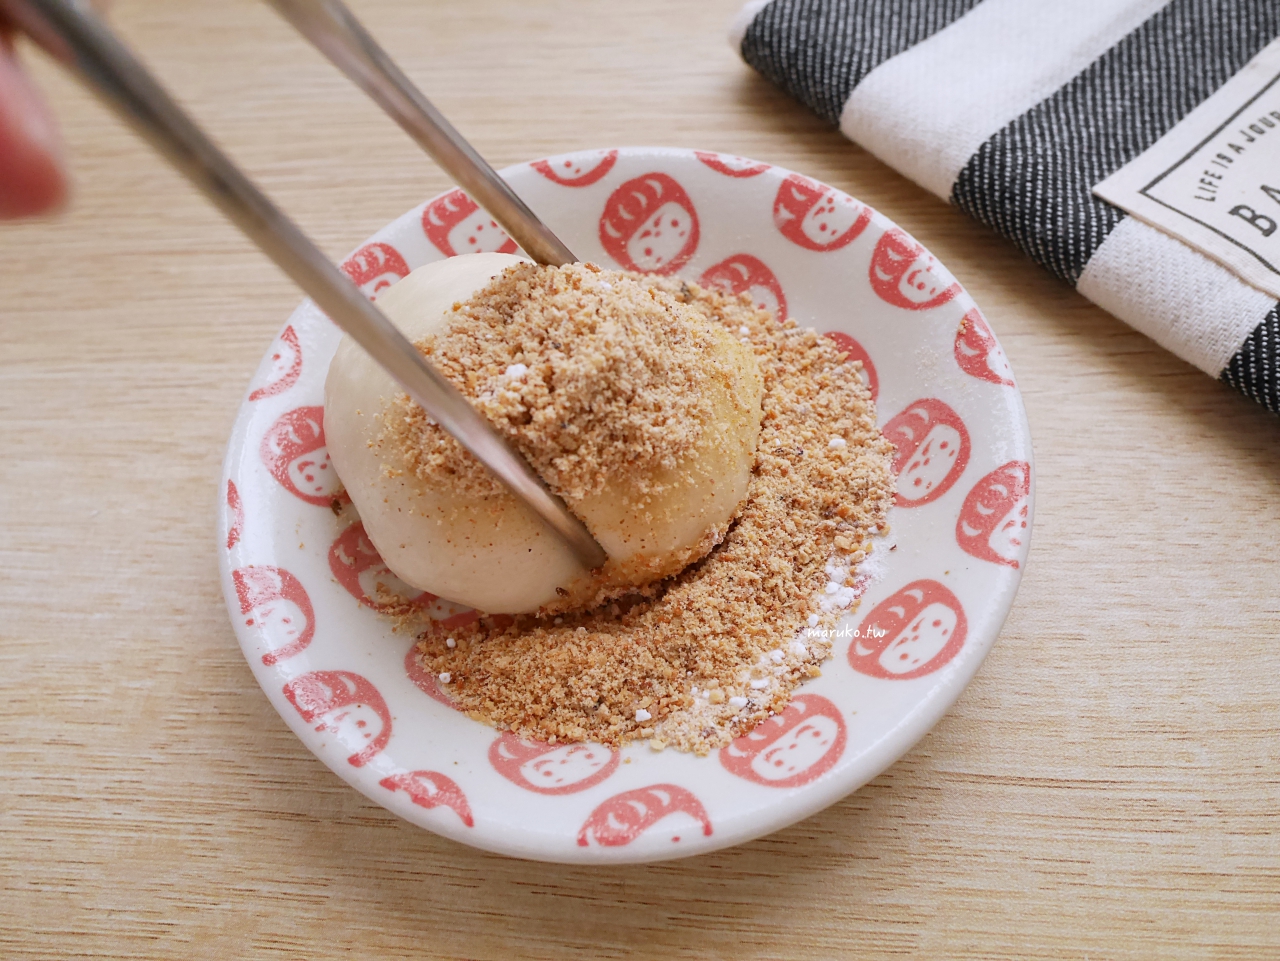 【食譜】花生麻糬 用無糖豆漿做香軟麻糬 簡單免開火點心 @Maruko與美食有個約會